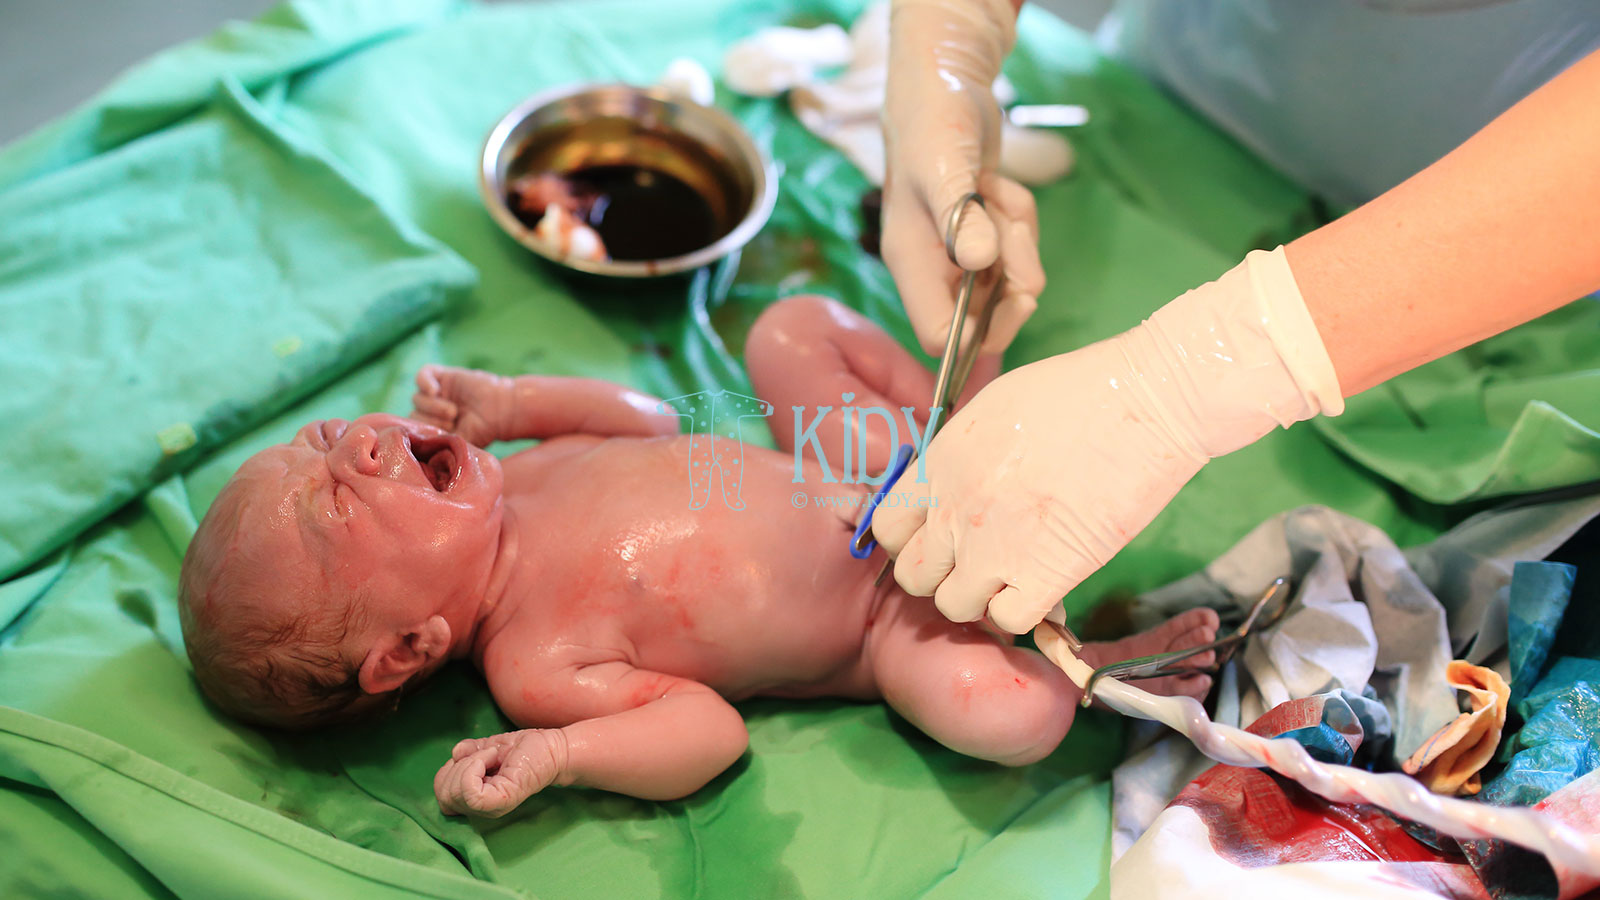 Первые дни жизни новорождённого - знакомство с миром и важные обследования  ❤️ KIDY.eu